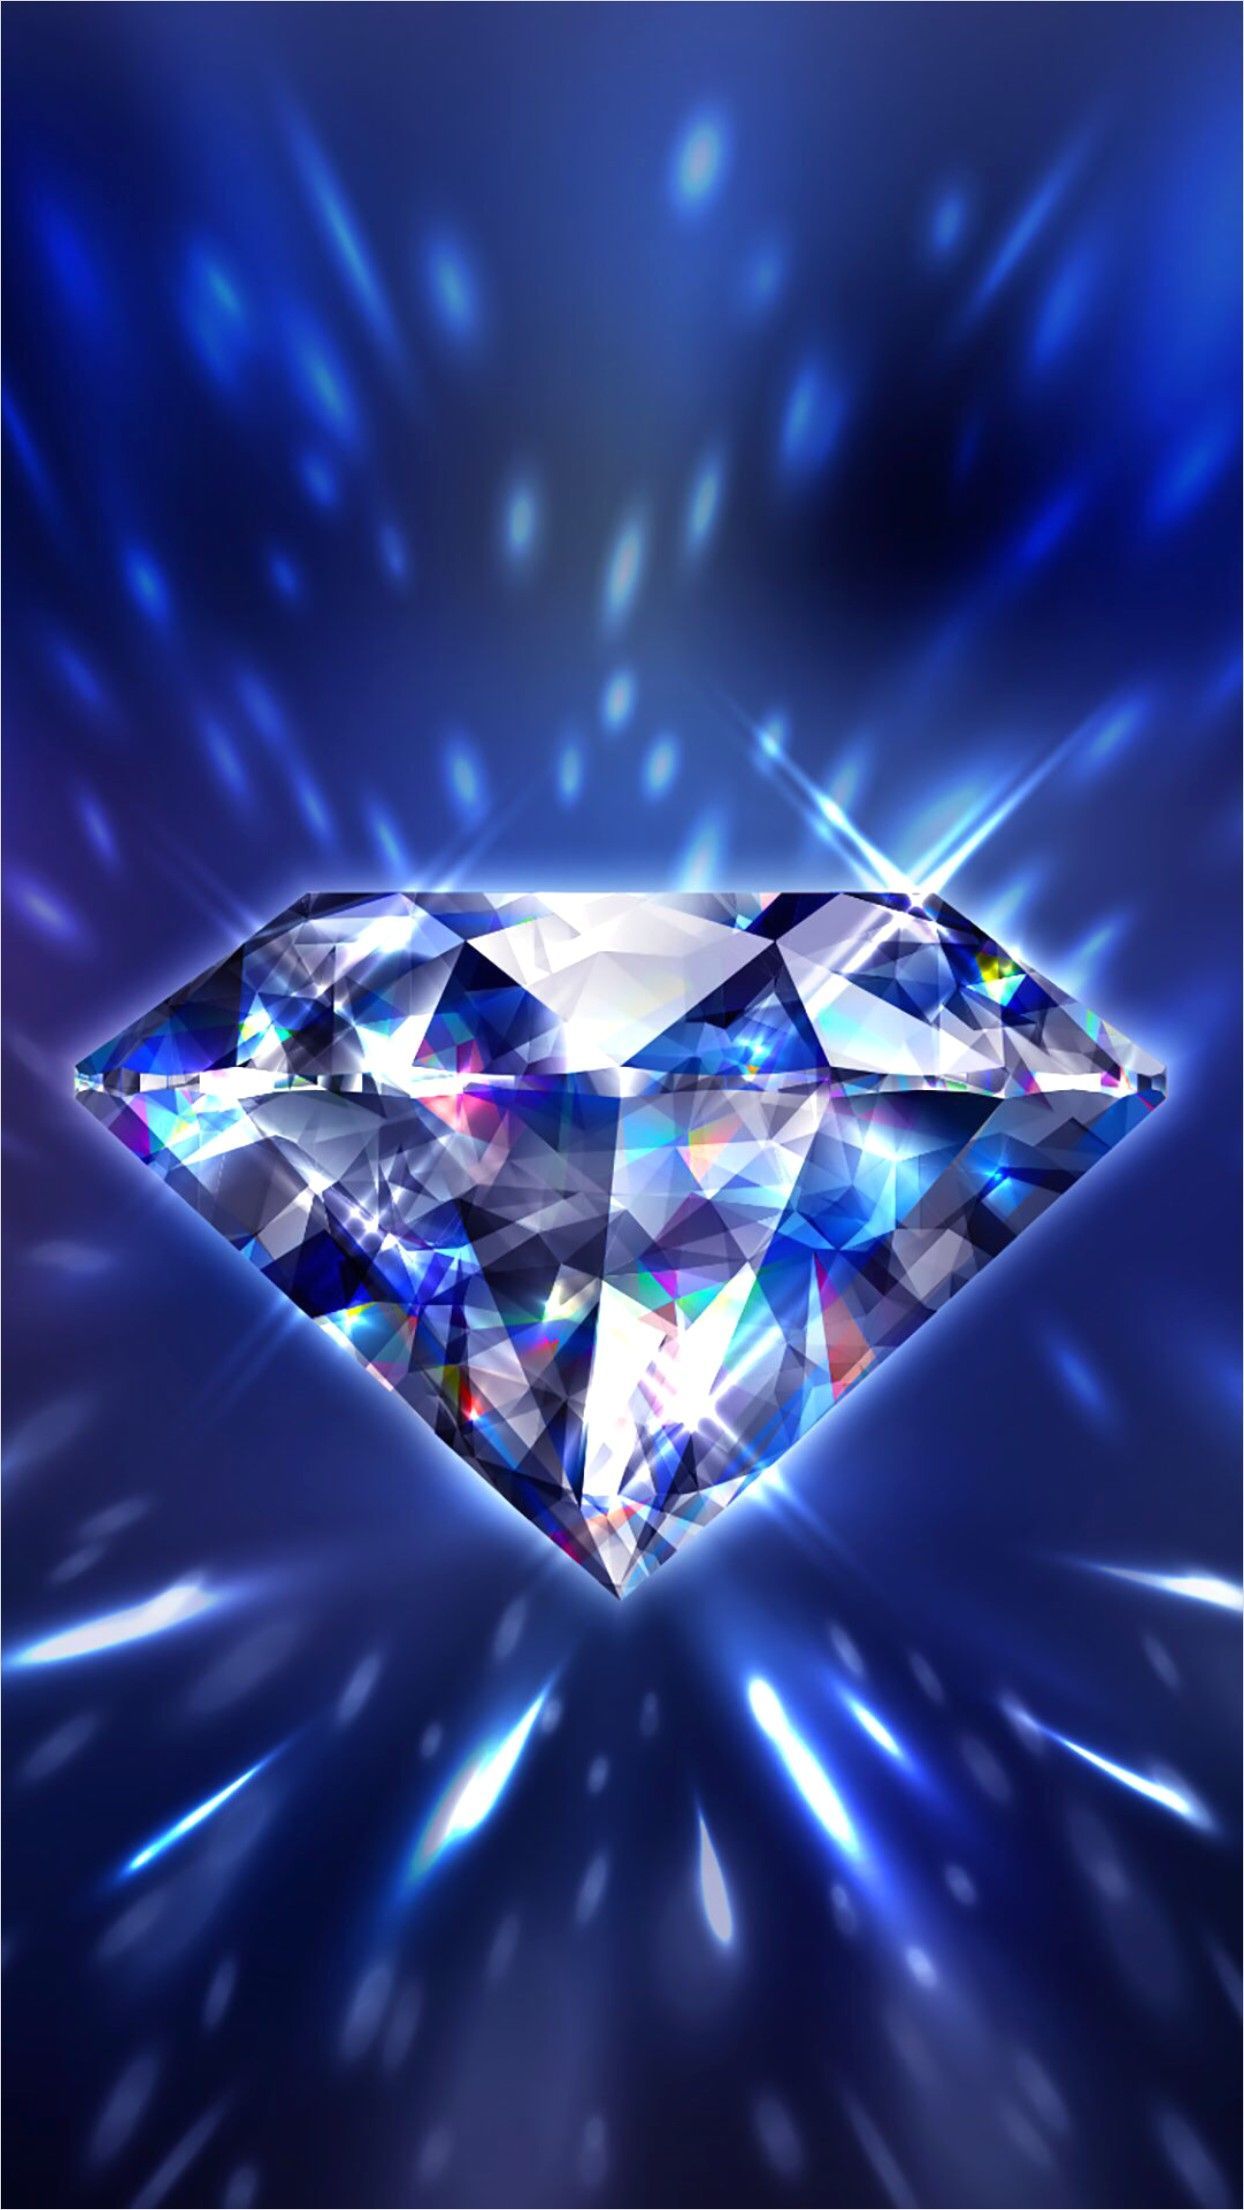 4k Blue Diamond Su Wallpaper. Diamond wallpaper iphone, Diamond wallpaper, Blue diamond su